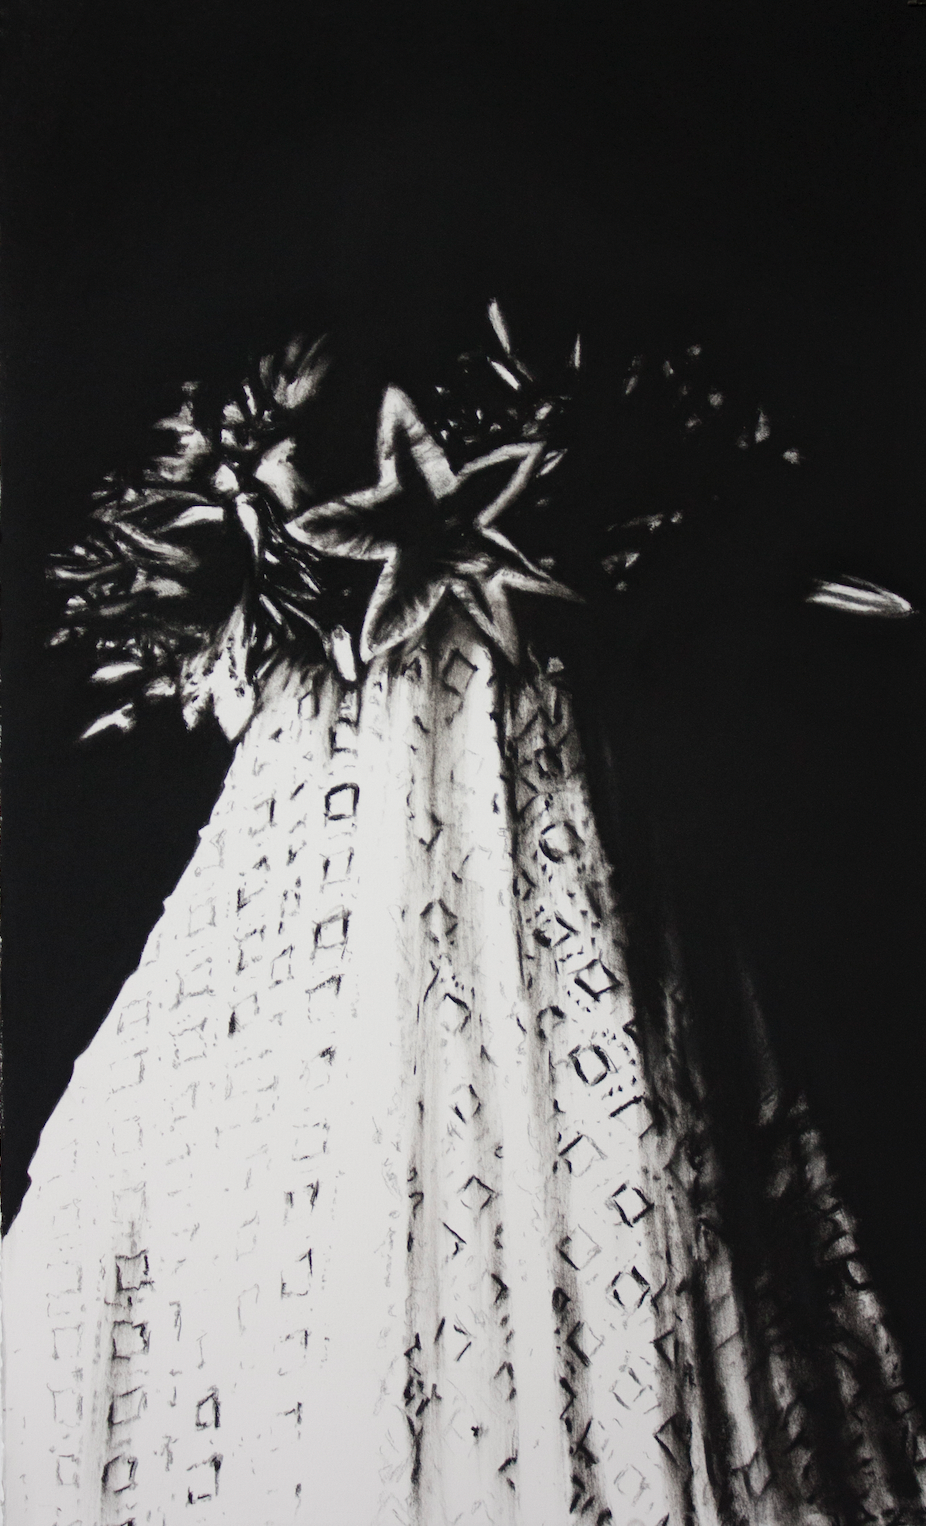 Leslie Lanxinger, "Virgin Flower Study" *Fairchain